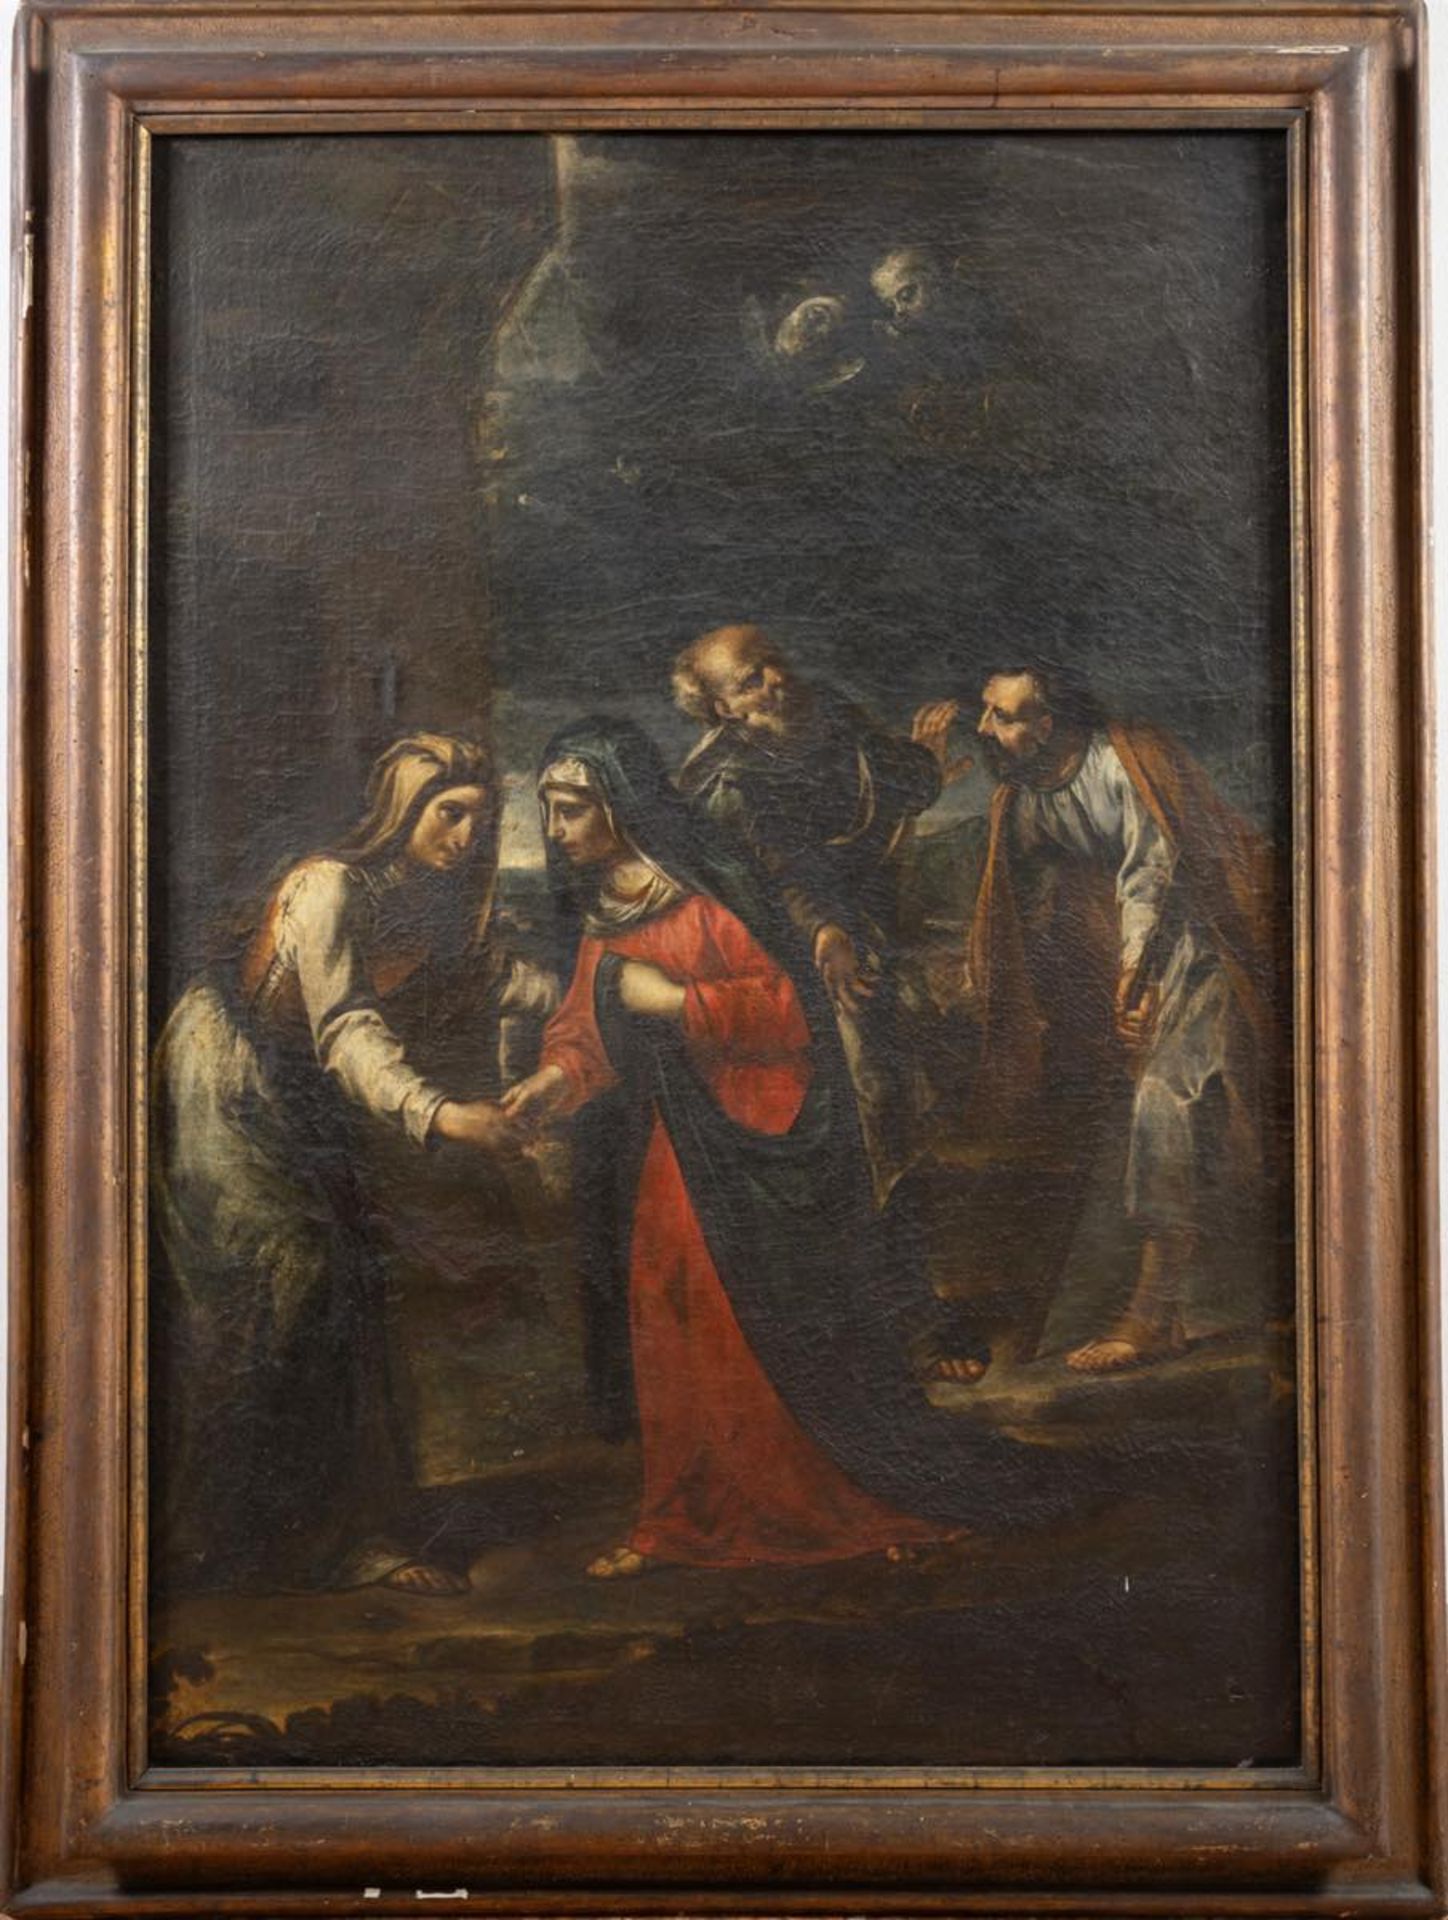 Maestro dell’XVII secolo, “Sacra visitazione”.Olio su tela, H cm 135x95 (difetti)